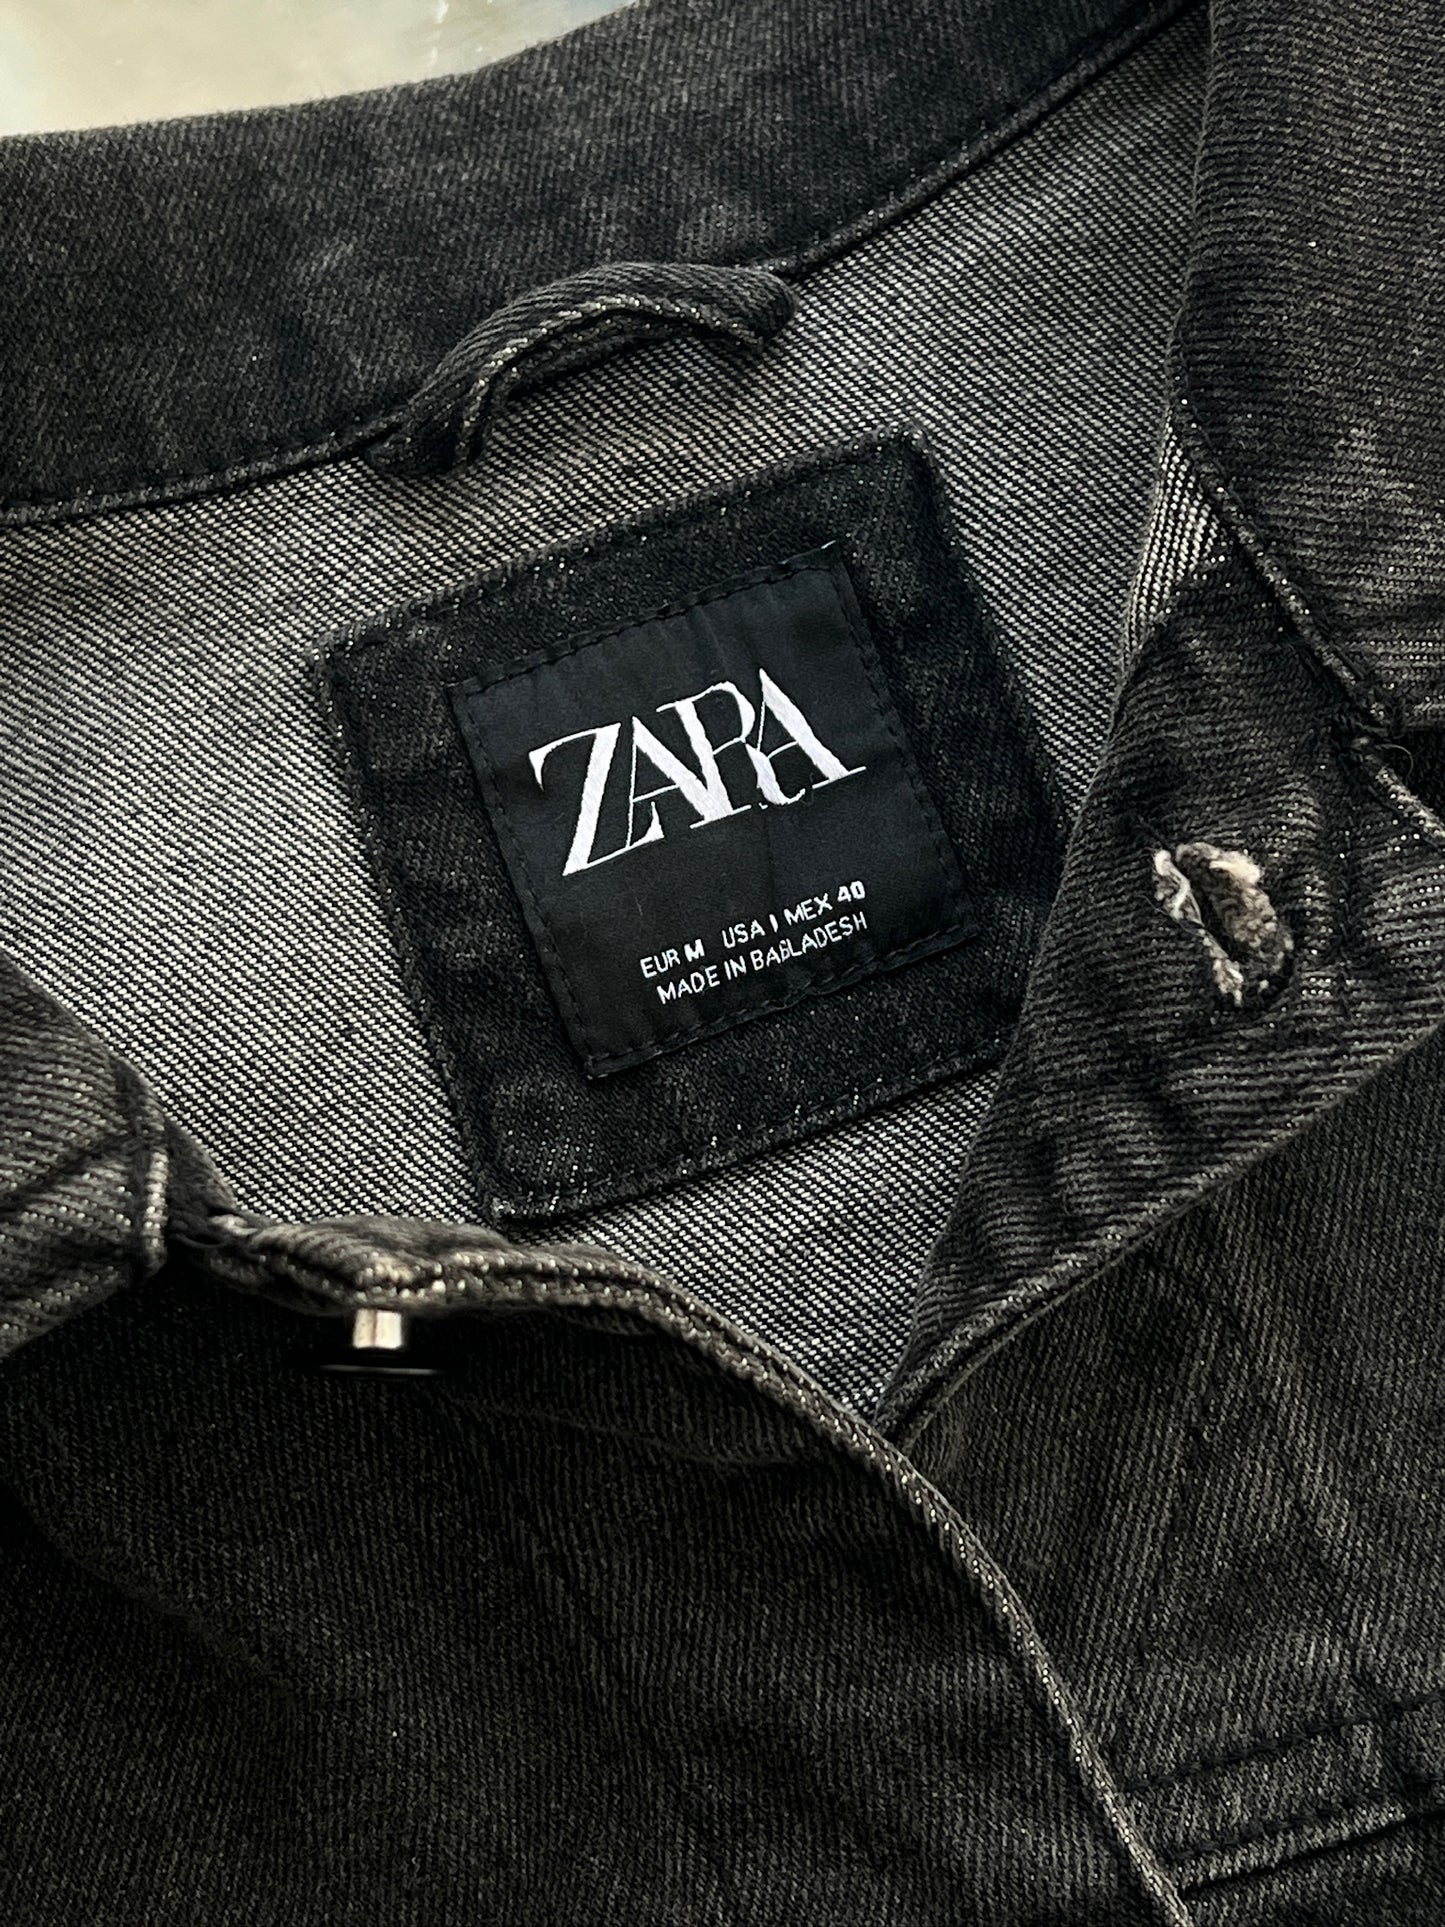 ZARA jacket 💎
Talla M